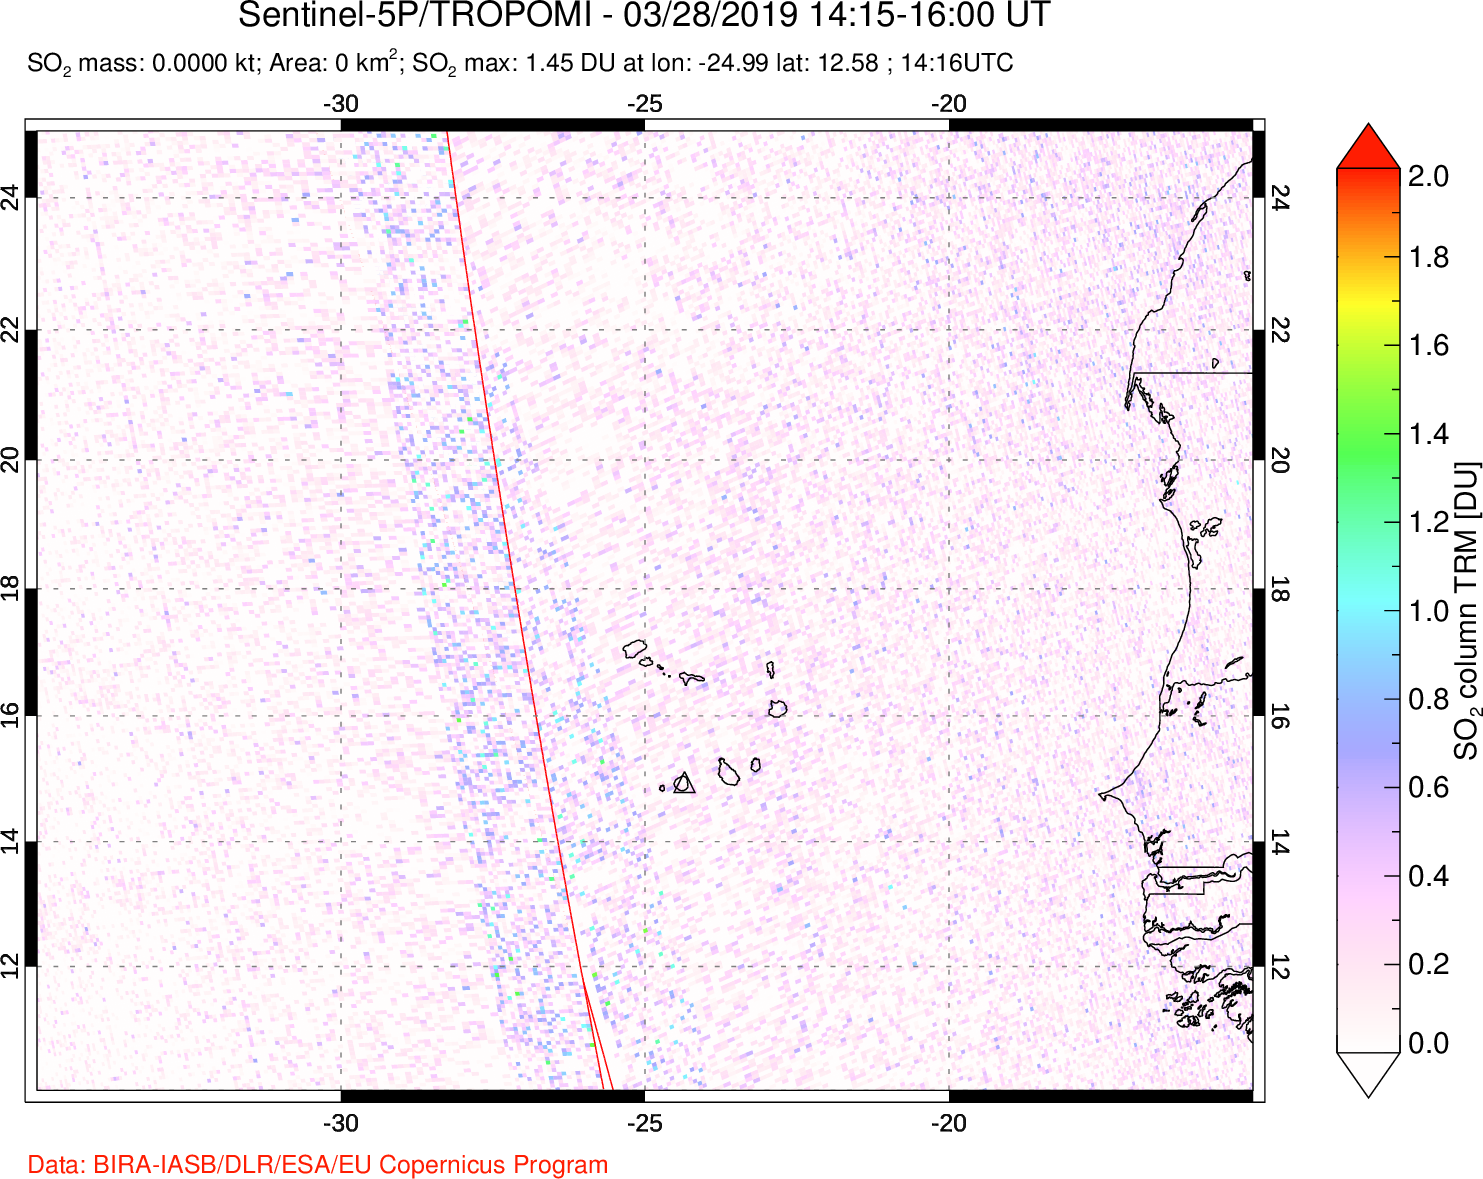 A sulfur dioxide image over Cape Verde Islands on Mar 28, 2019.